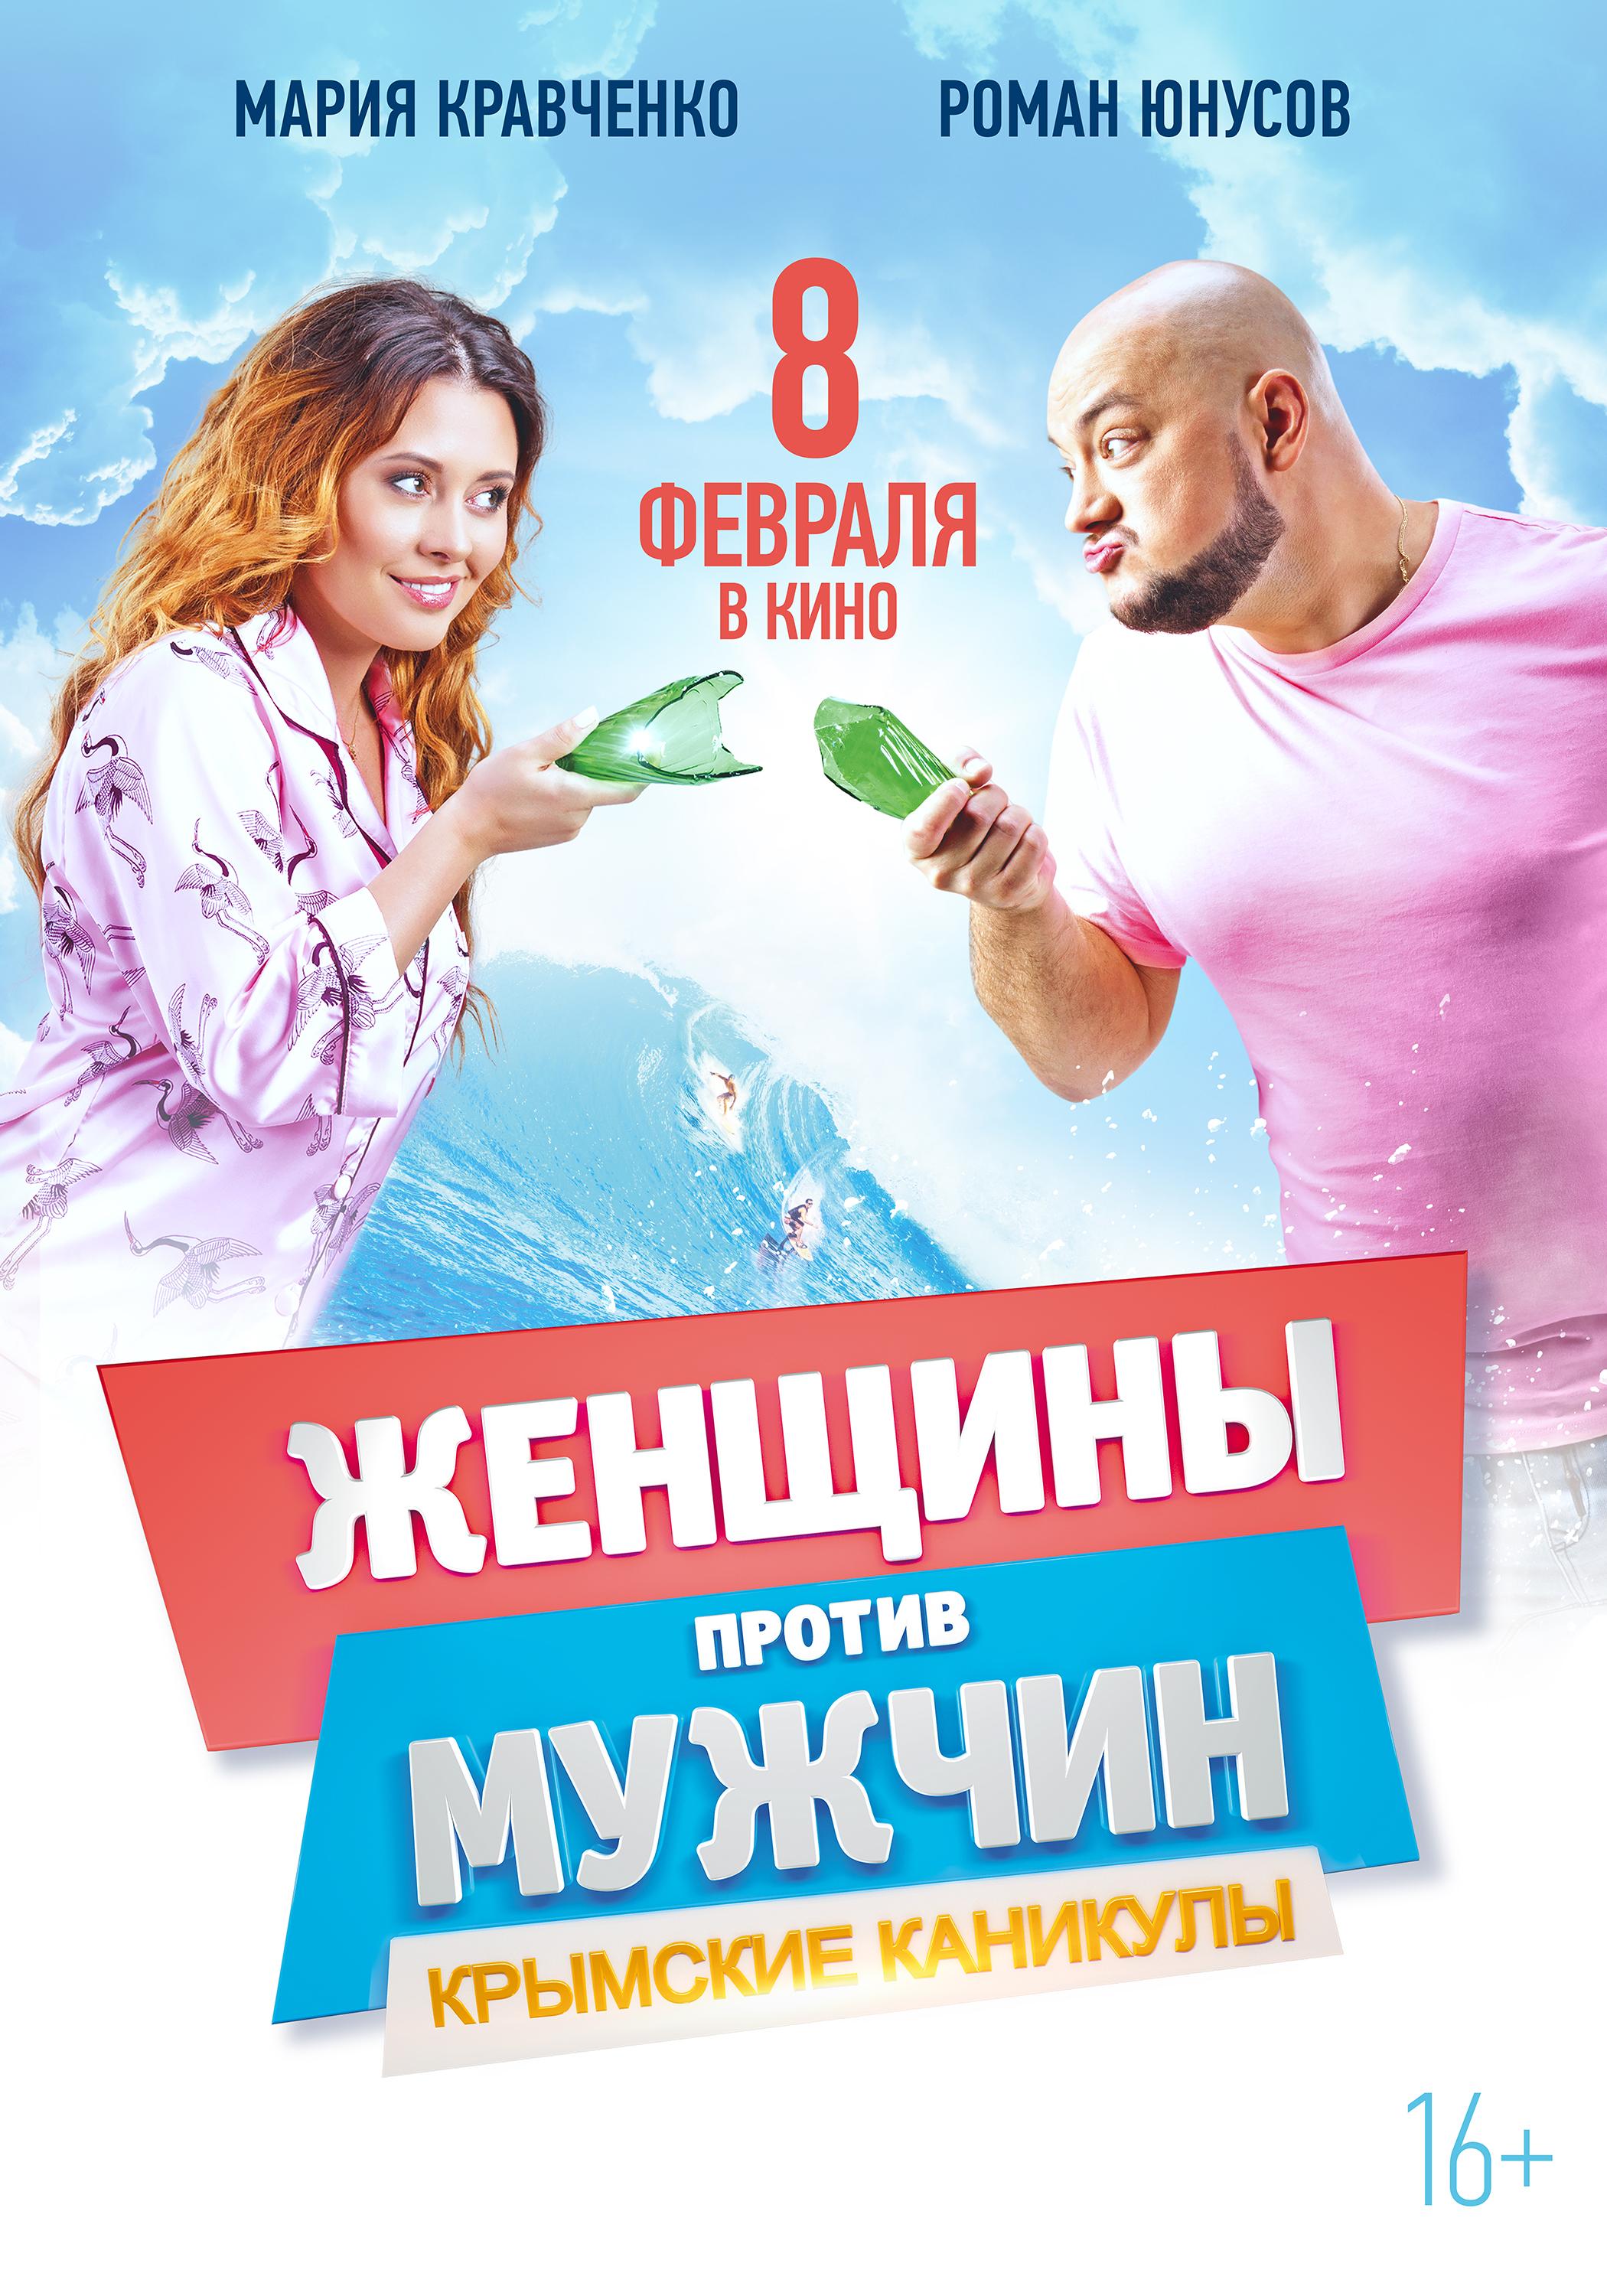 Постер - Женщины против мужчин: Крымские каникулы: 2100x3000 / 548.81 Кб